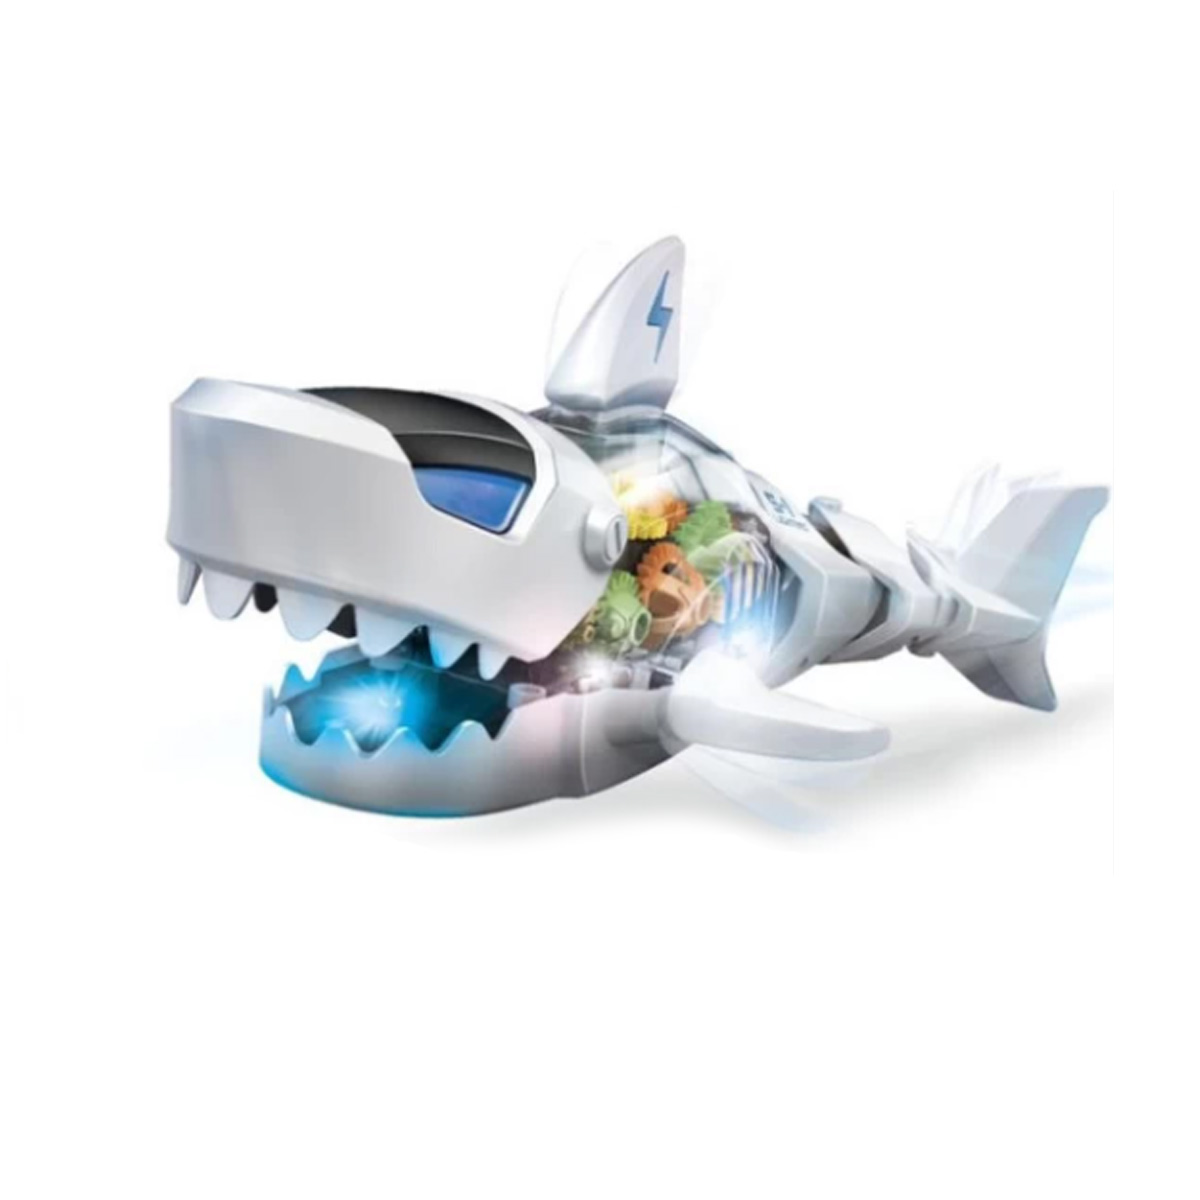 Žralok - robot se zvuky, světlem a pohyby